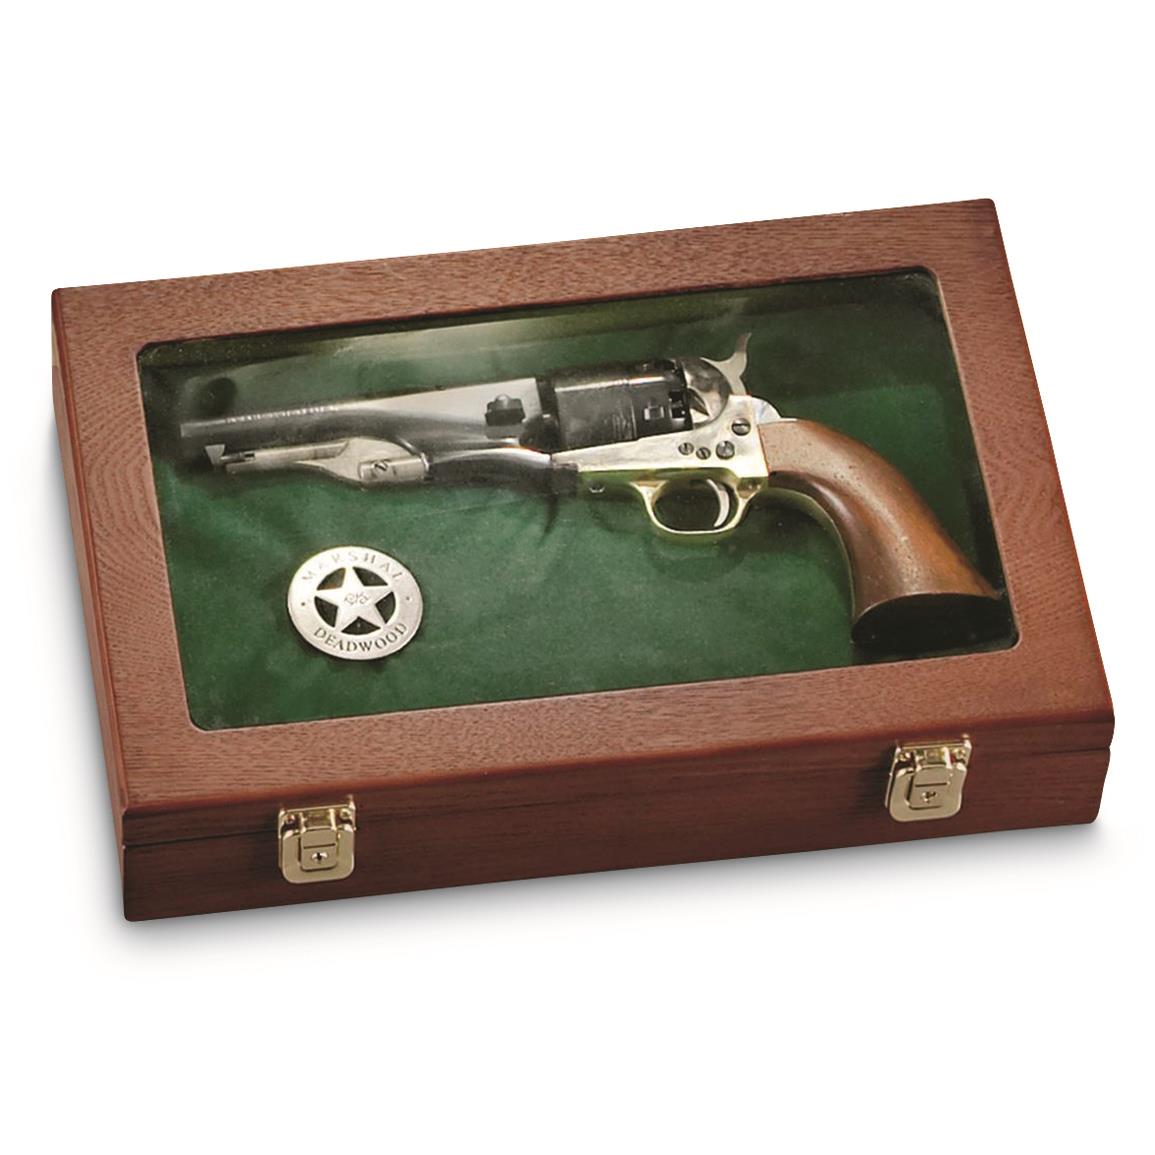 CASTLECREEK Handgun Display Case, Walnut, Oak